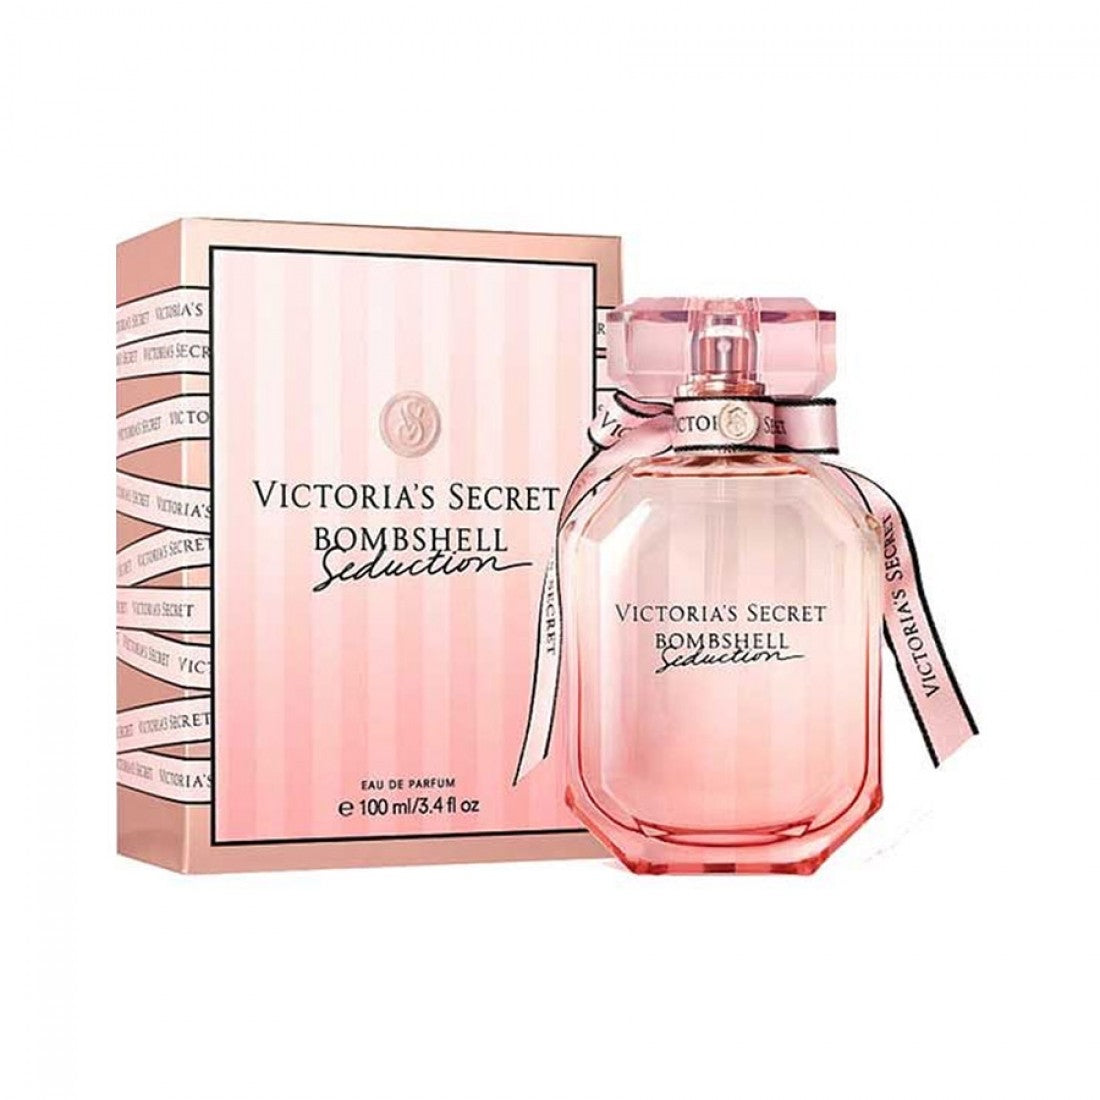 Victoria's Secret Bombshell Seduction Eau De Perfume - 100ml